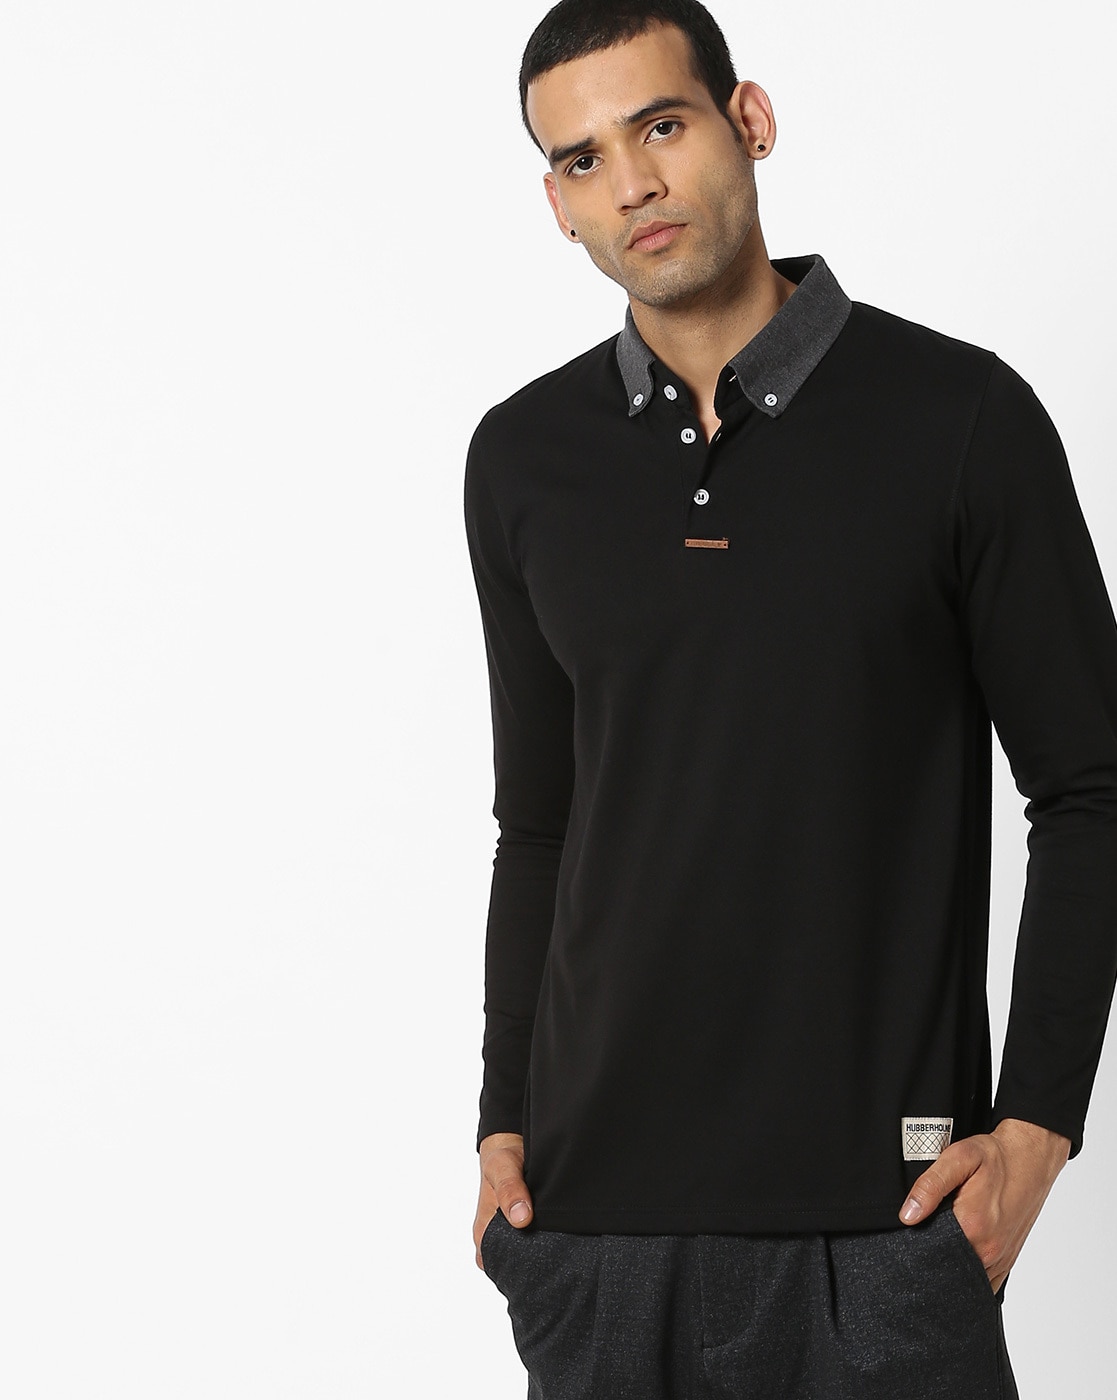 At afsløre Forbavselse overdrivelse Buy Black Tshirts for Men by Hubberholme Online | Ajio.com